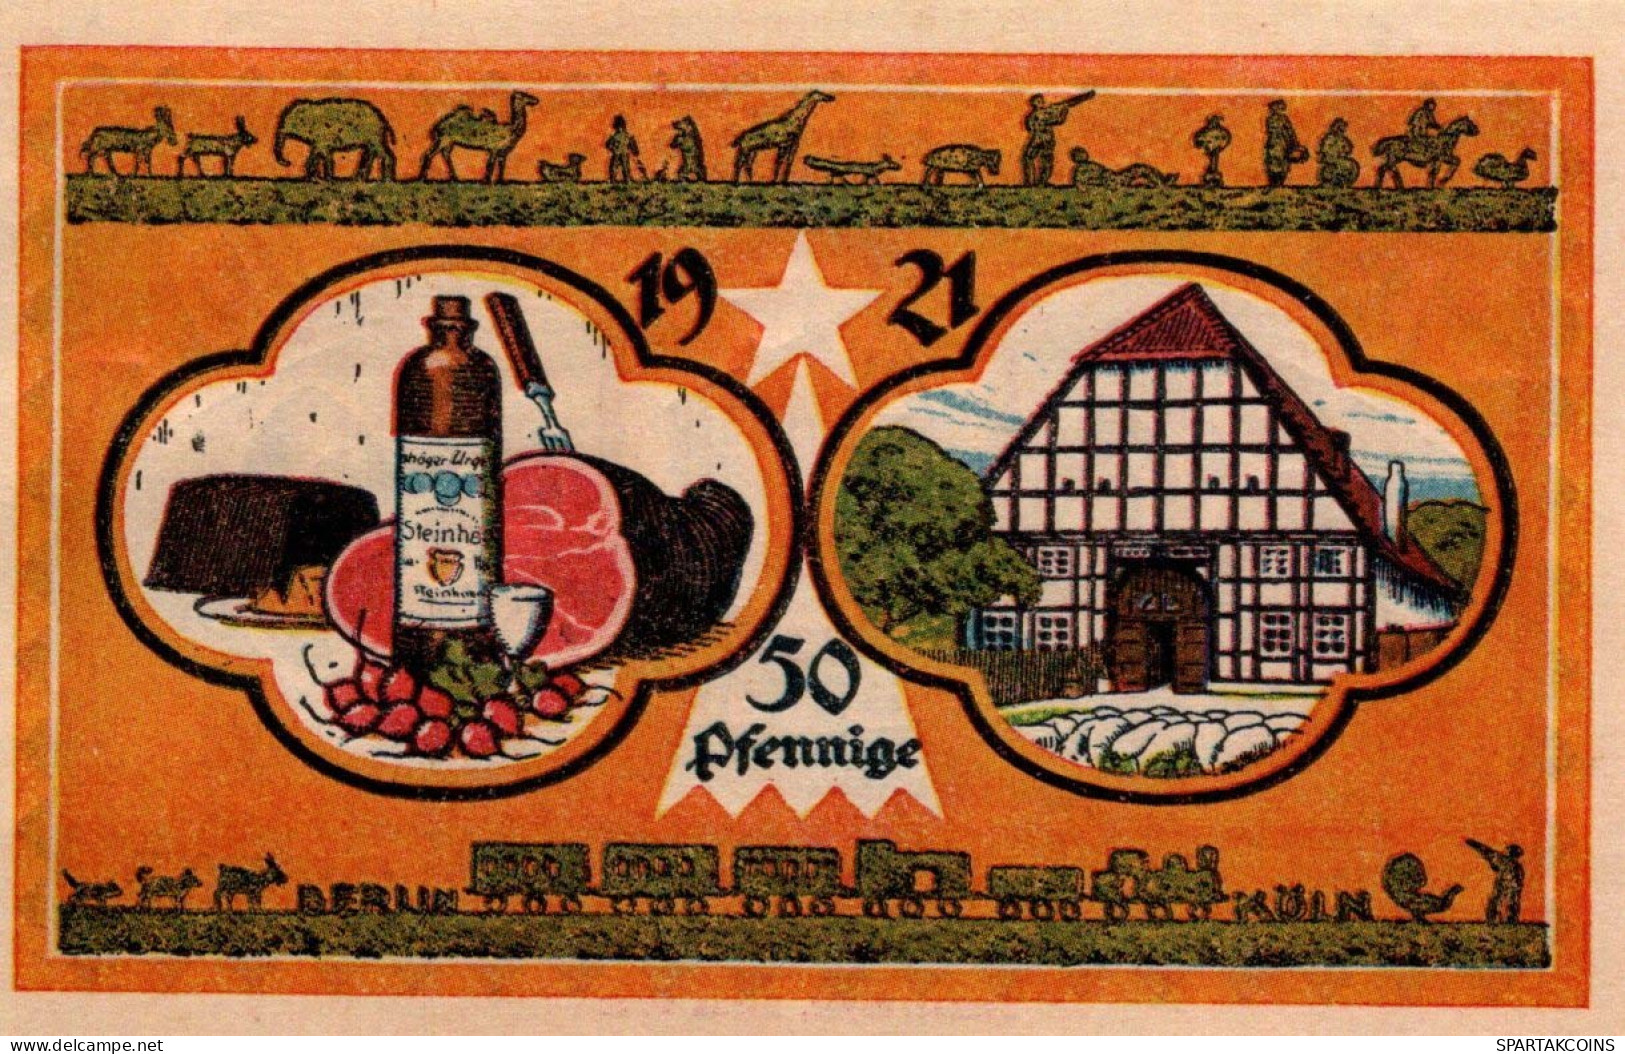 50 PFENNIG 1921 Stadt STEINHEIM IN WESTFALEN Westphalia UNC DEUTSCHLAND #PI962 - [11] Emisiones Locales